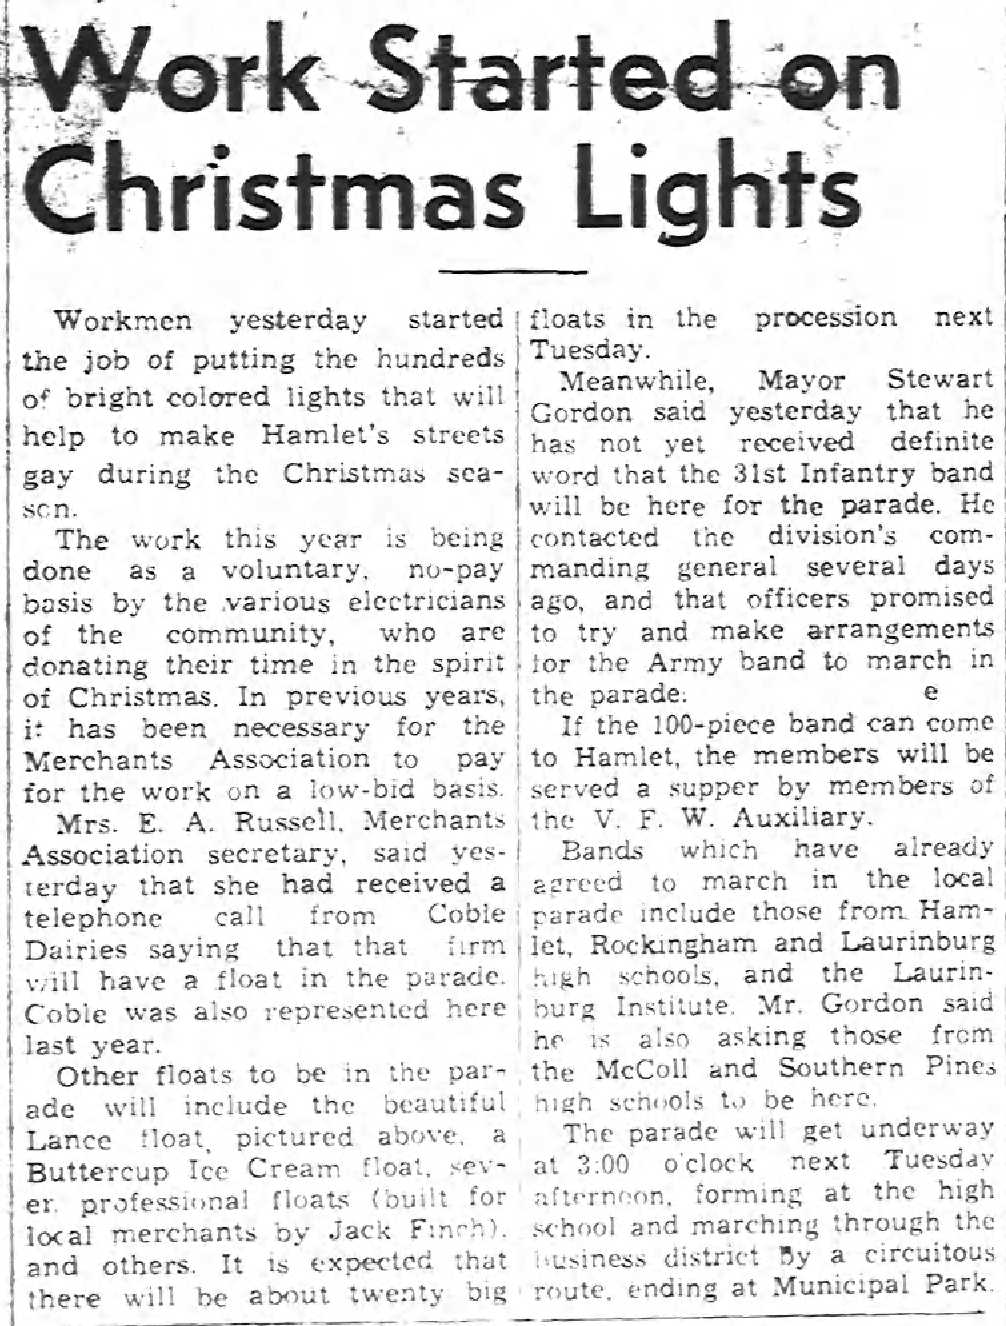 1951 Christmas lights.jpg